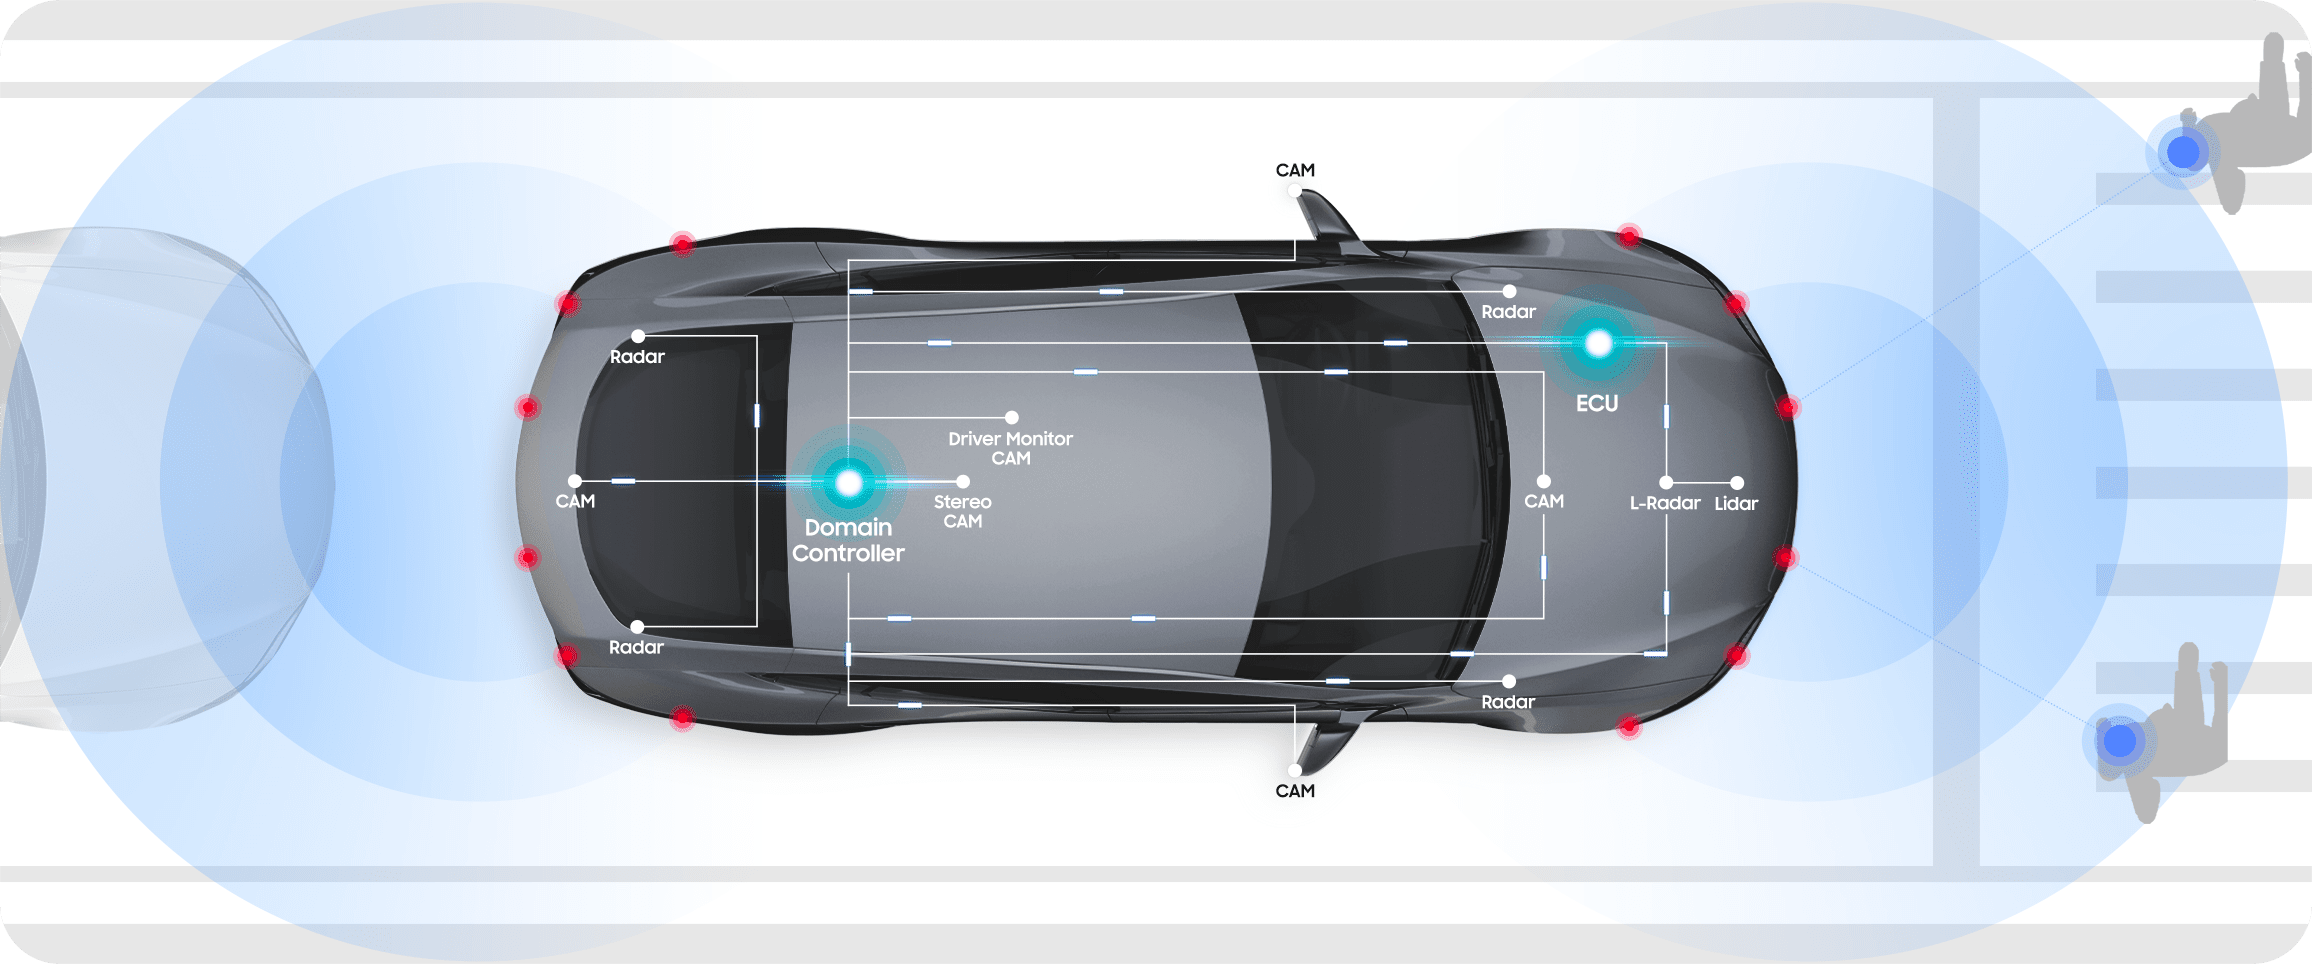 Samsung Electronics LPDDR4, LPDDR4X, and UFS help the host system make autonomous driving decisions on autonomous driving technology level 3.